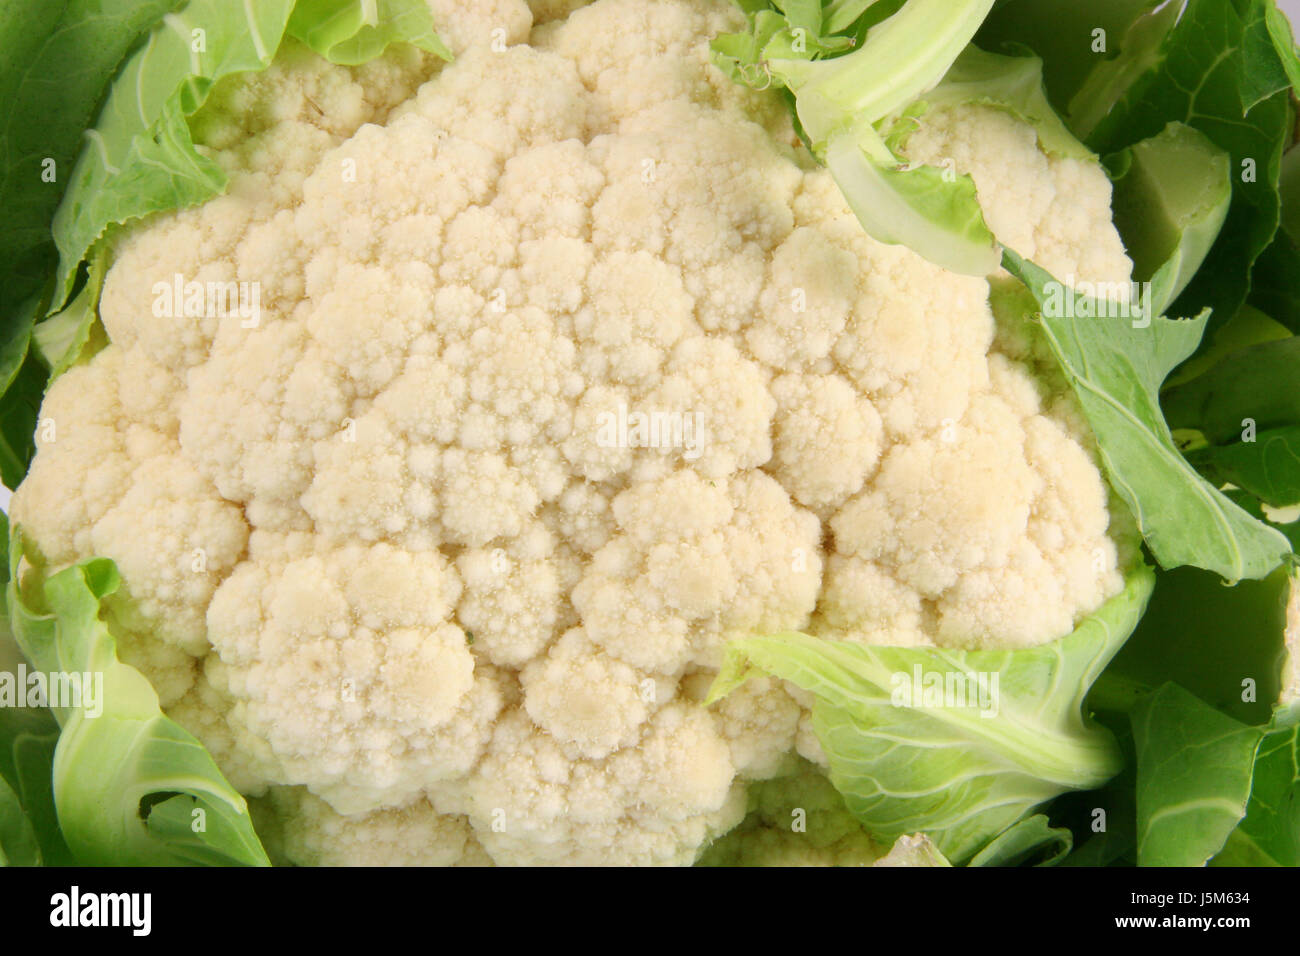 food aliment vegetable cabbage cauliflower kale stew essen blumenkohl brassica Stock Photo